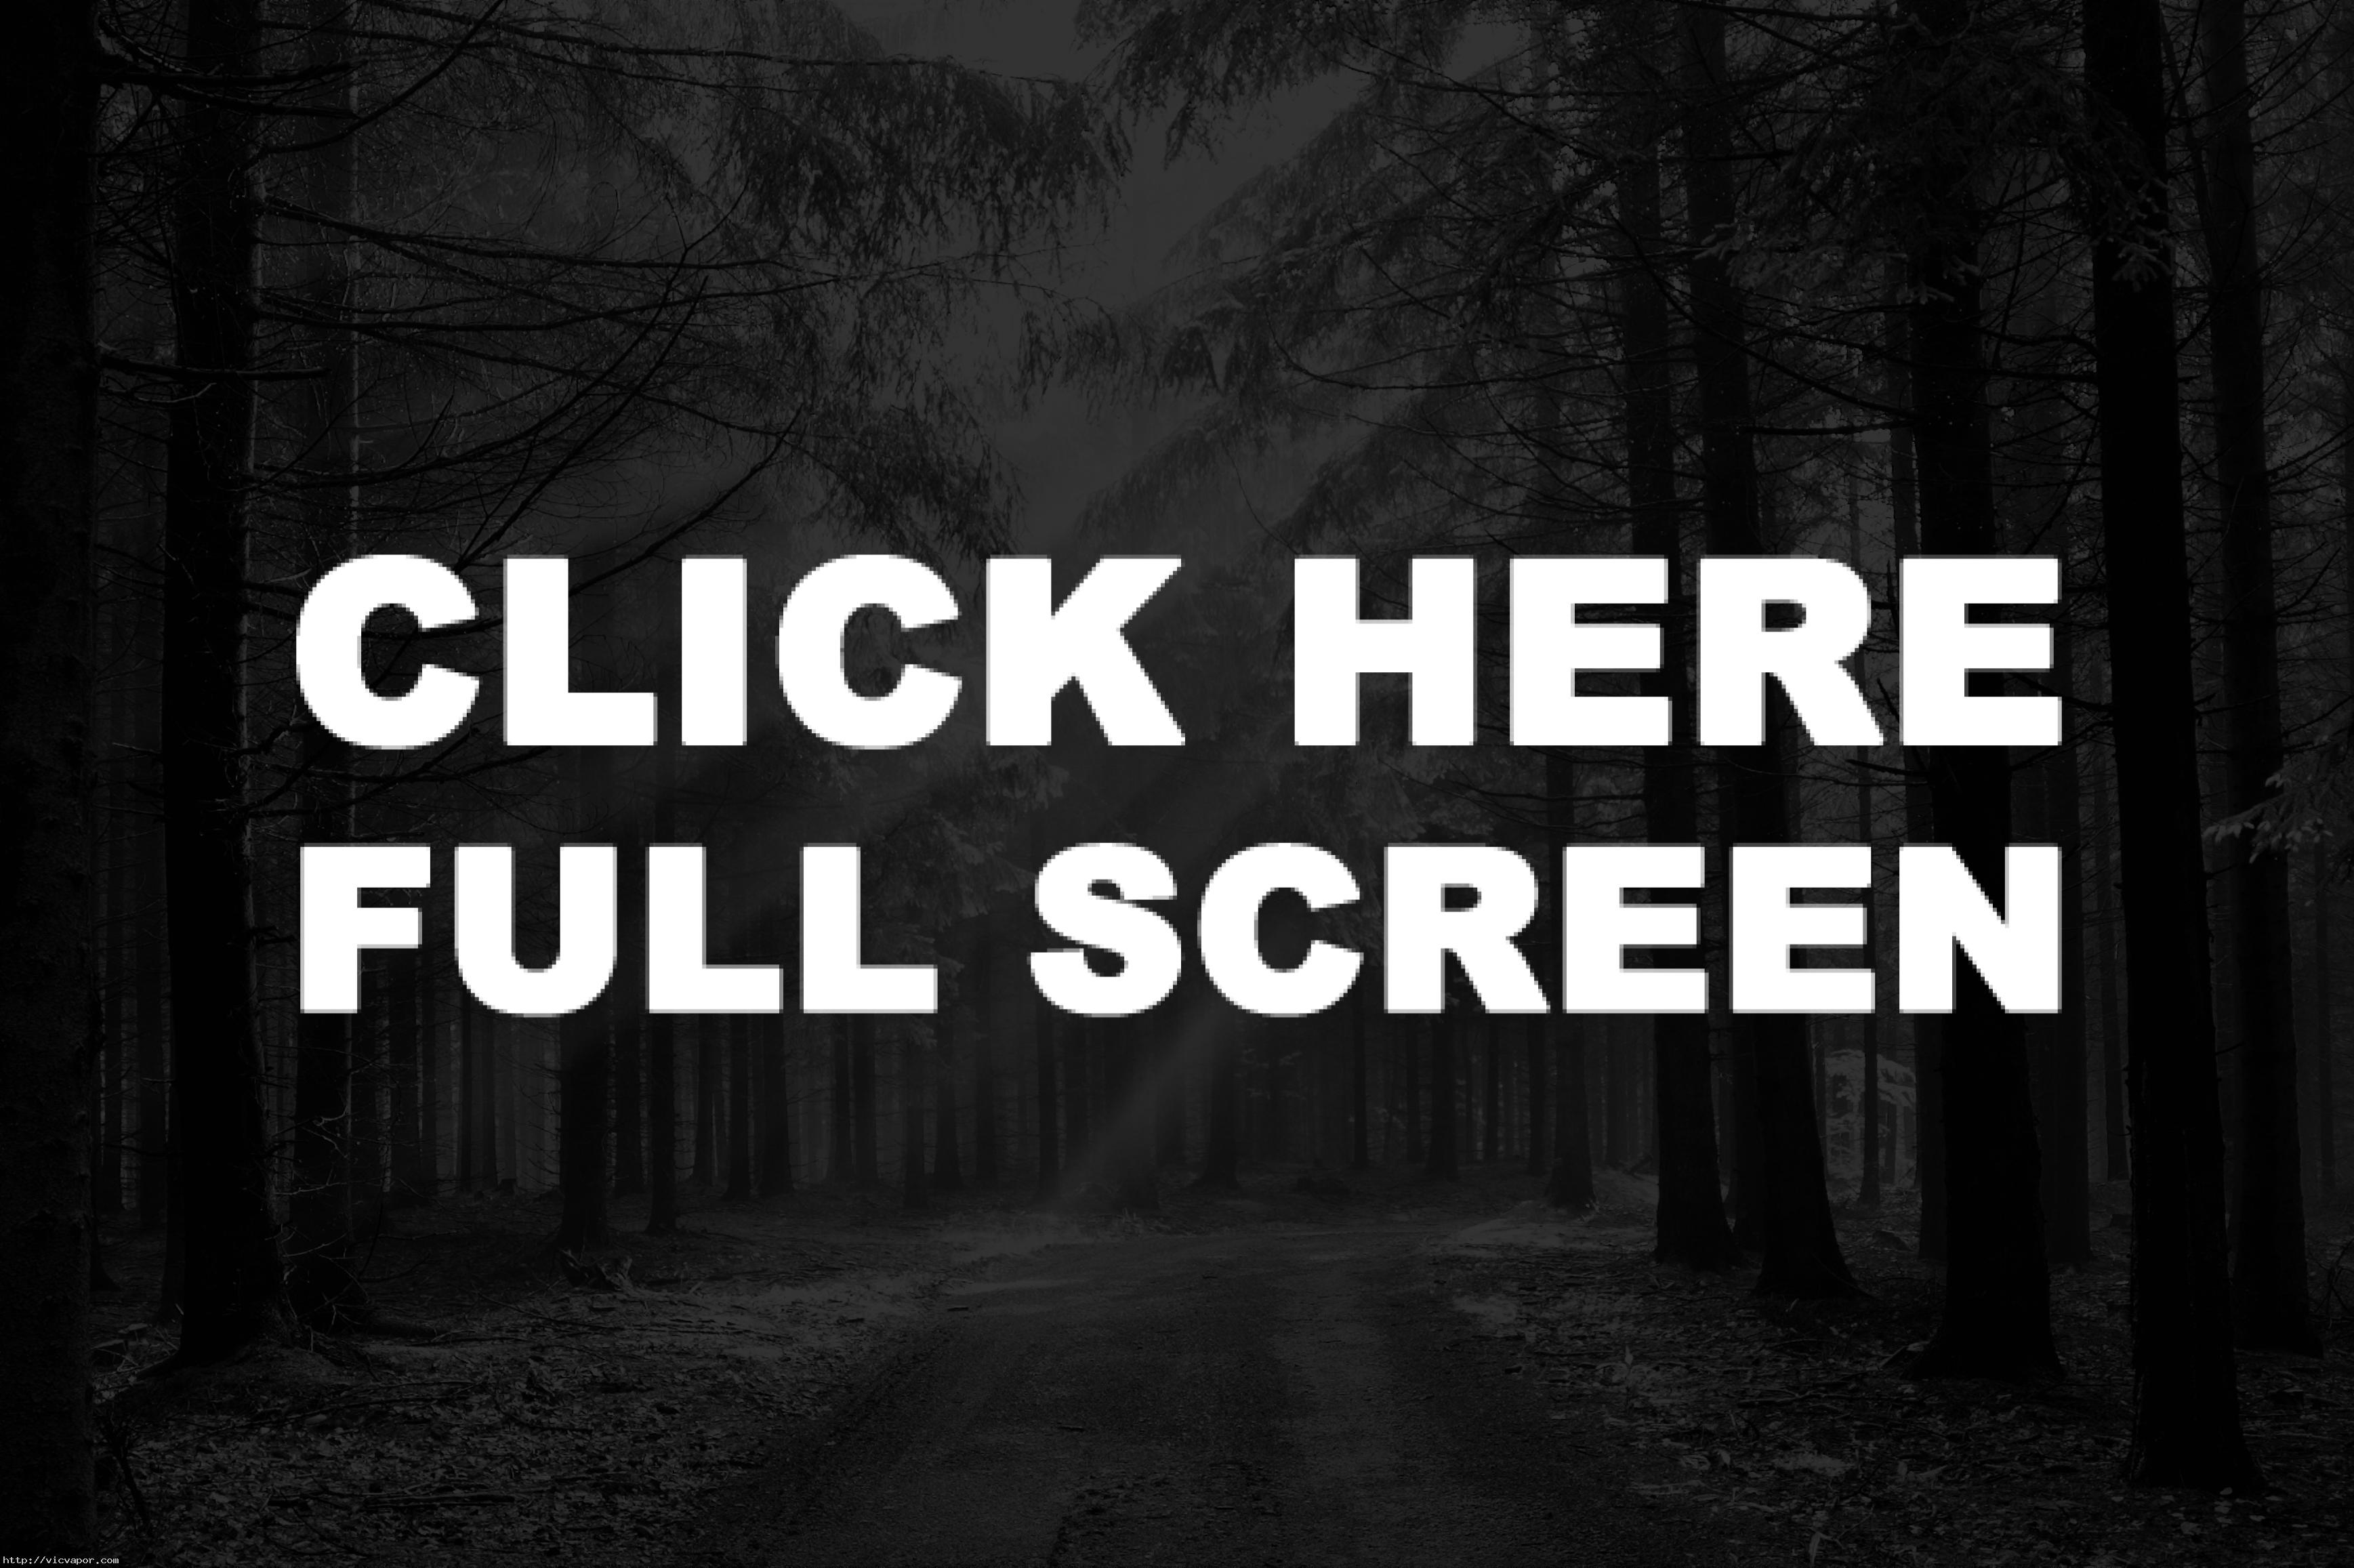 Nocturnal Animals Watch Full HD Film 2016 Online